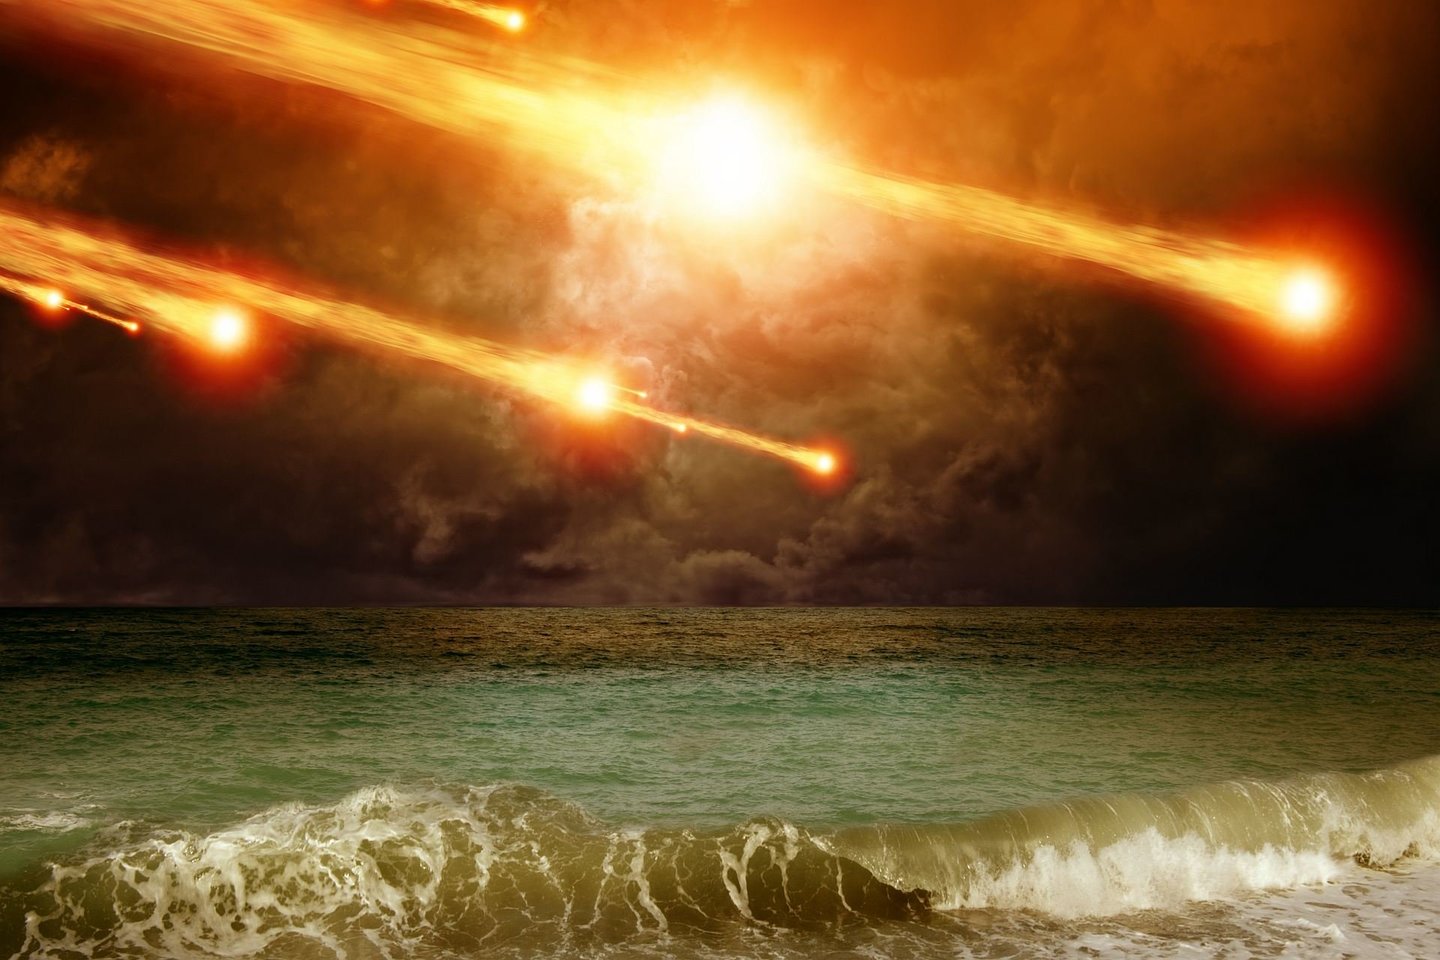  Mokslininkai mano, kad prieš 3 700 metų labai karšta meteorito sprogimo banga galėjo sunaikinti prie Negyvosios jūros įsikūrusius miestus ir gyvenvietes.<br> 123RF iliustr.